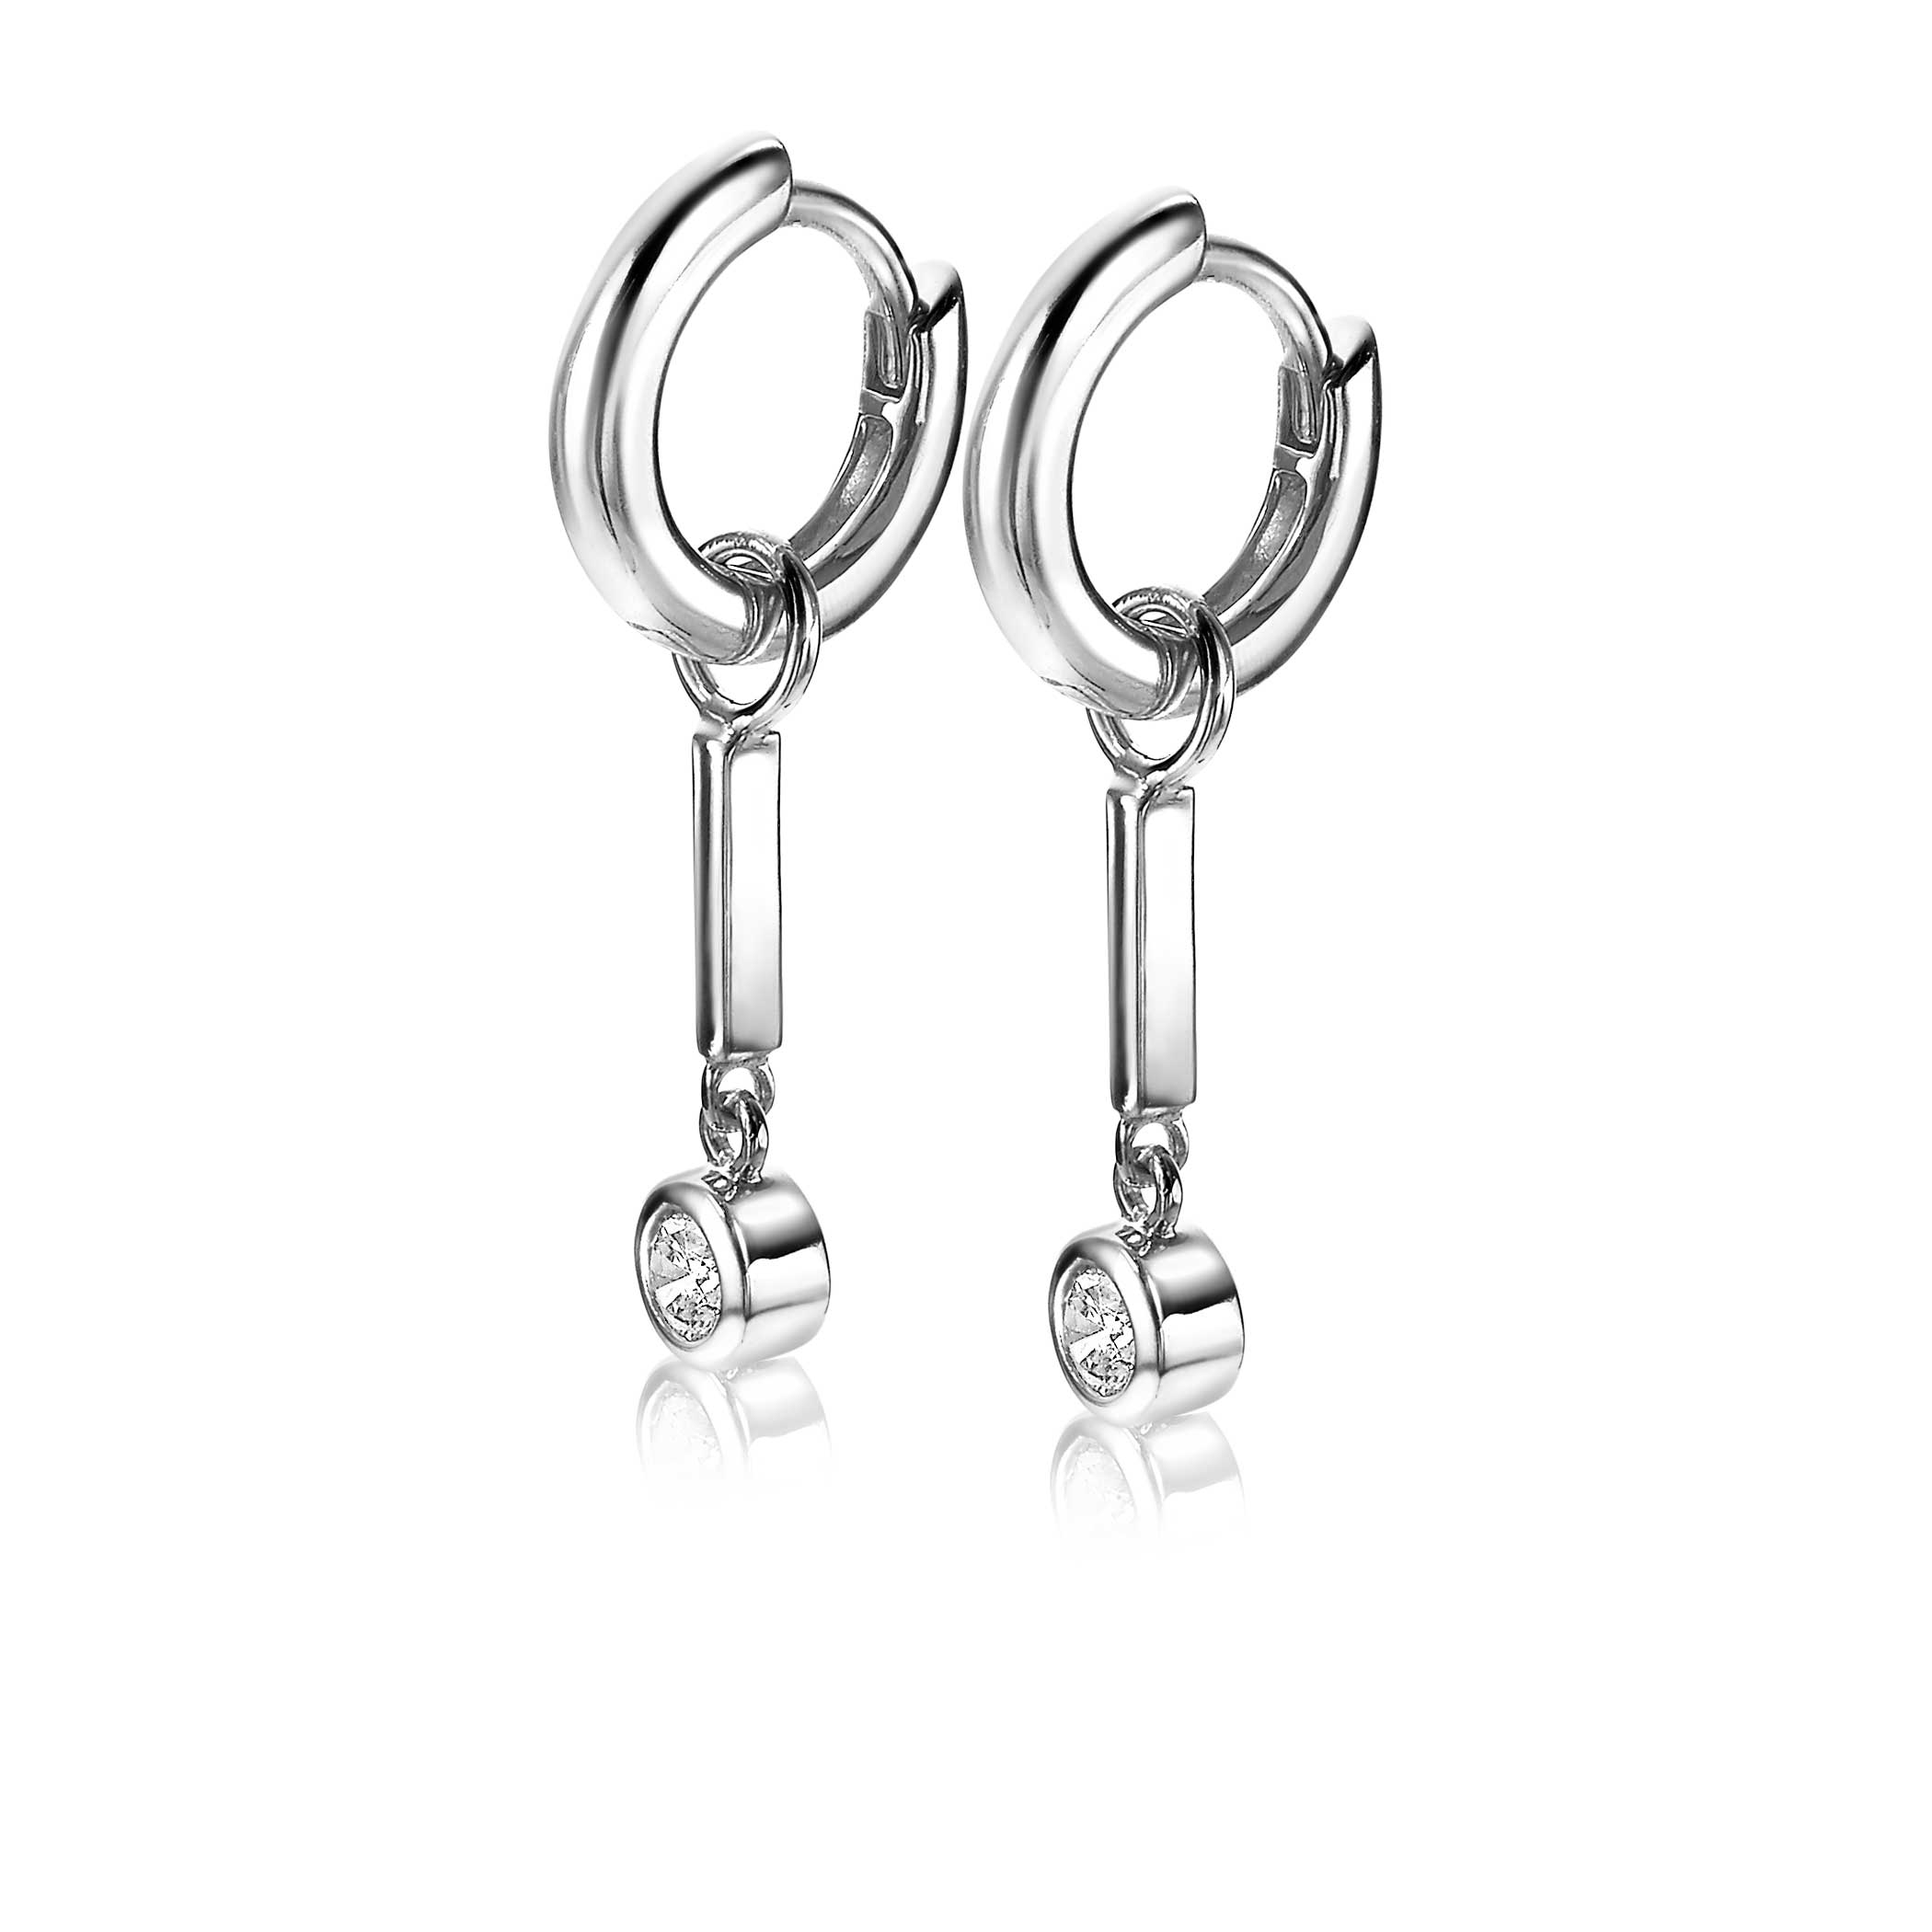 19mm ZINZI Sterling Silver Earrings Pendants Bar White Zirconia ZICH1953 (excl. hoop earrings)